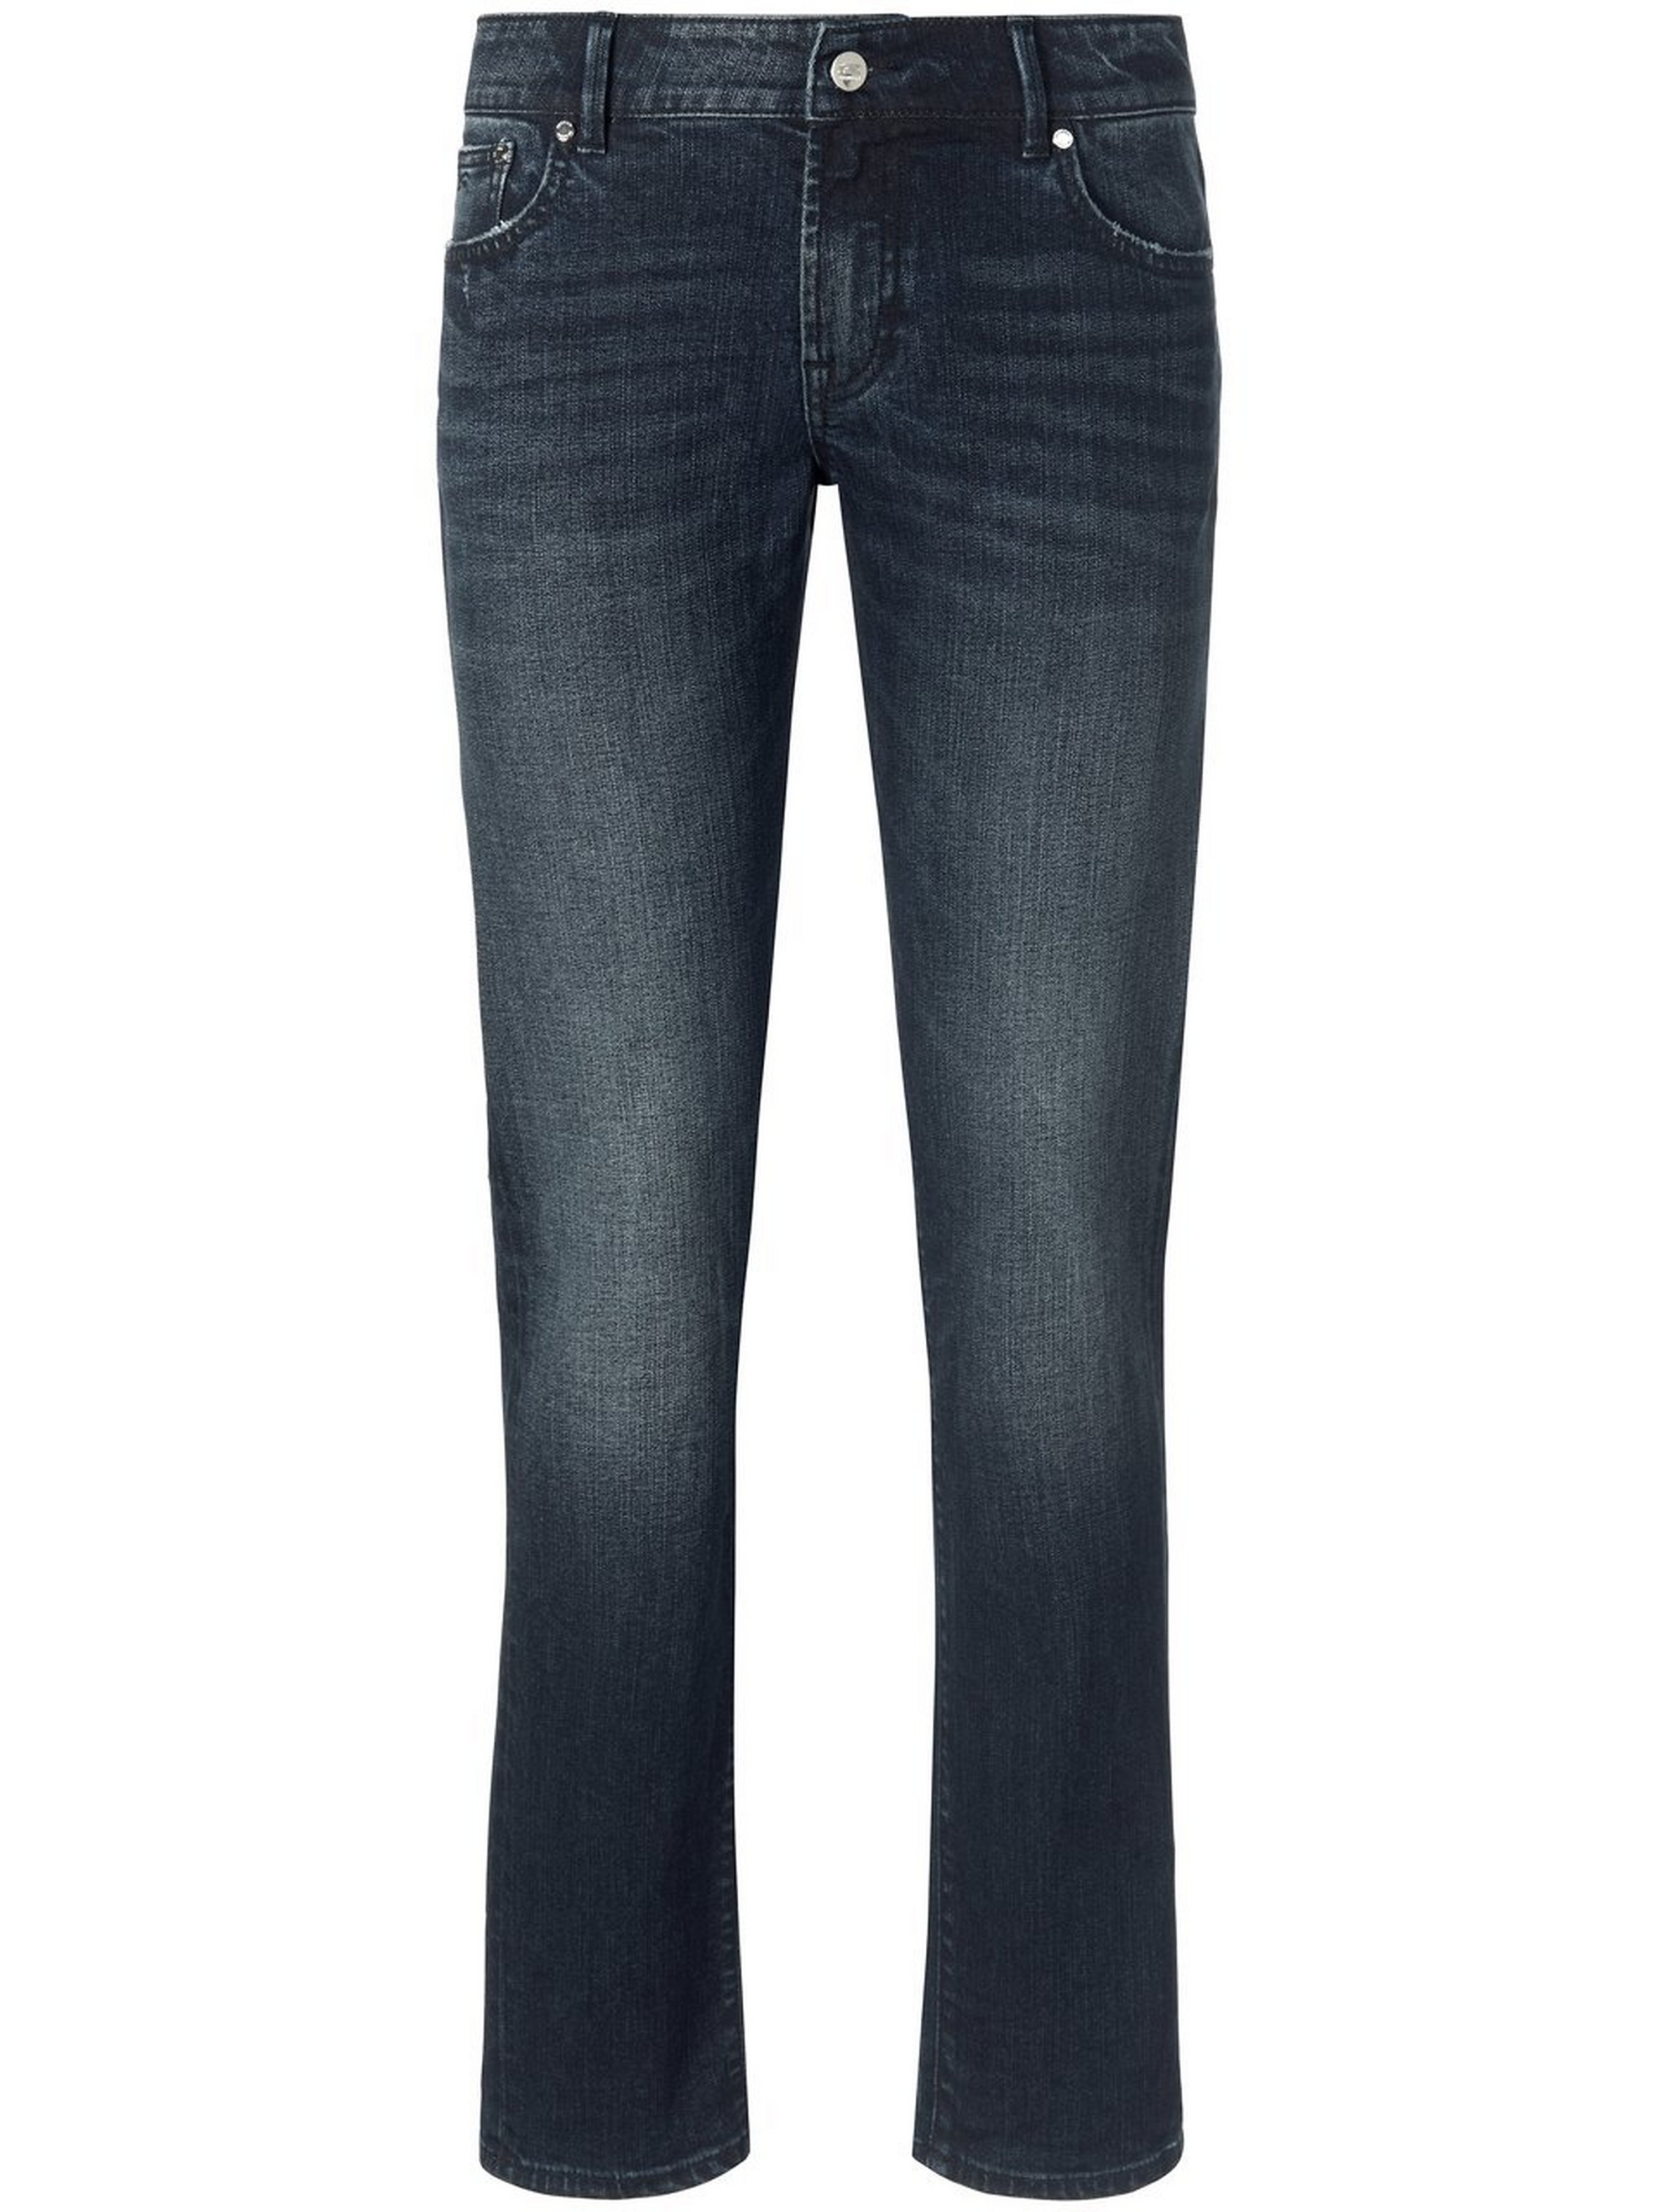 Jeans in inch lengte 28 Van Denham blauw